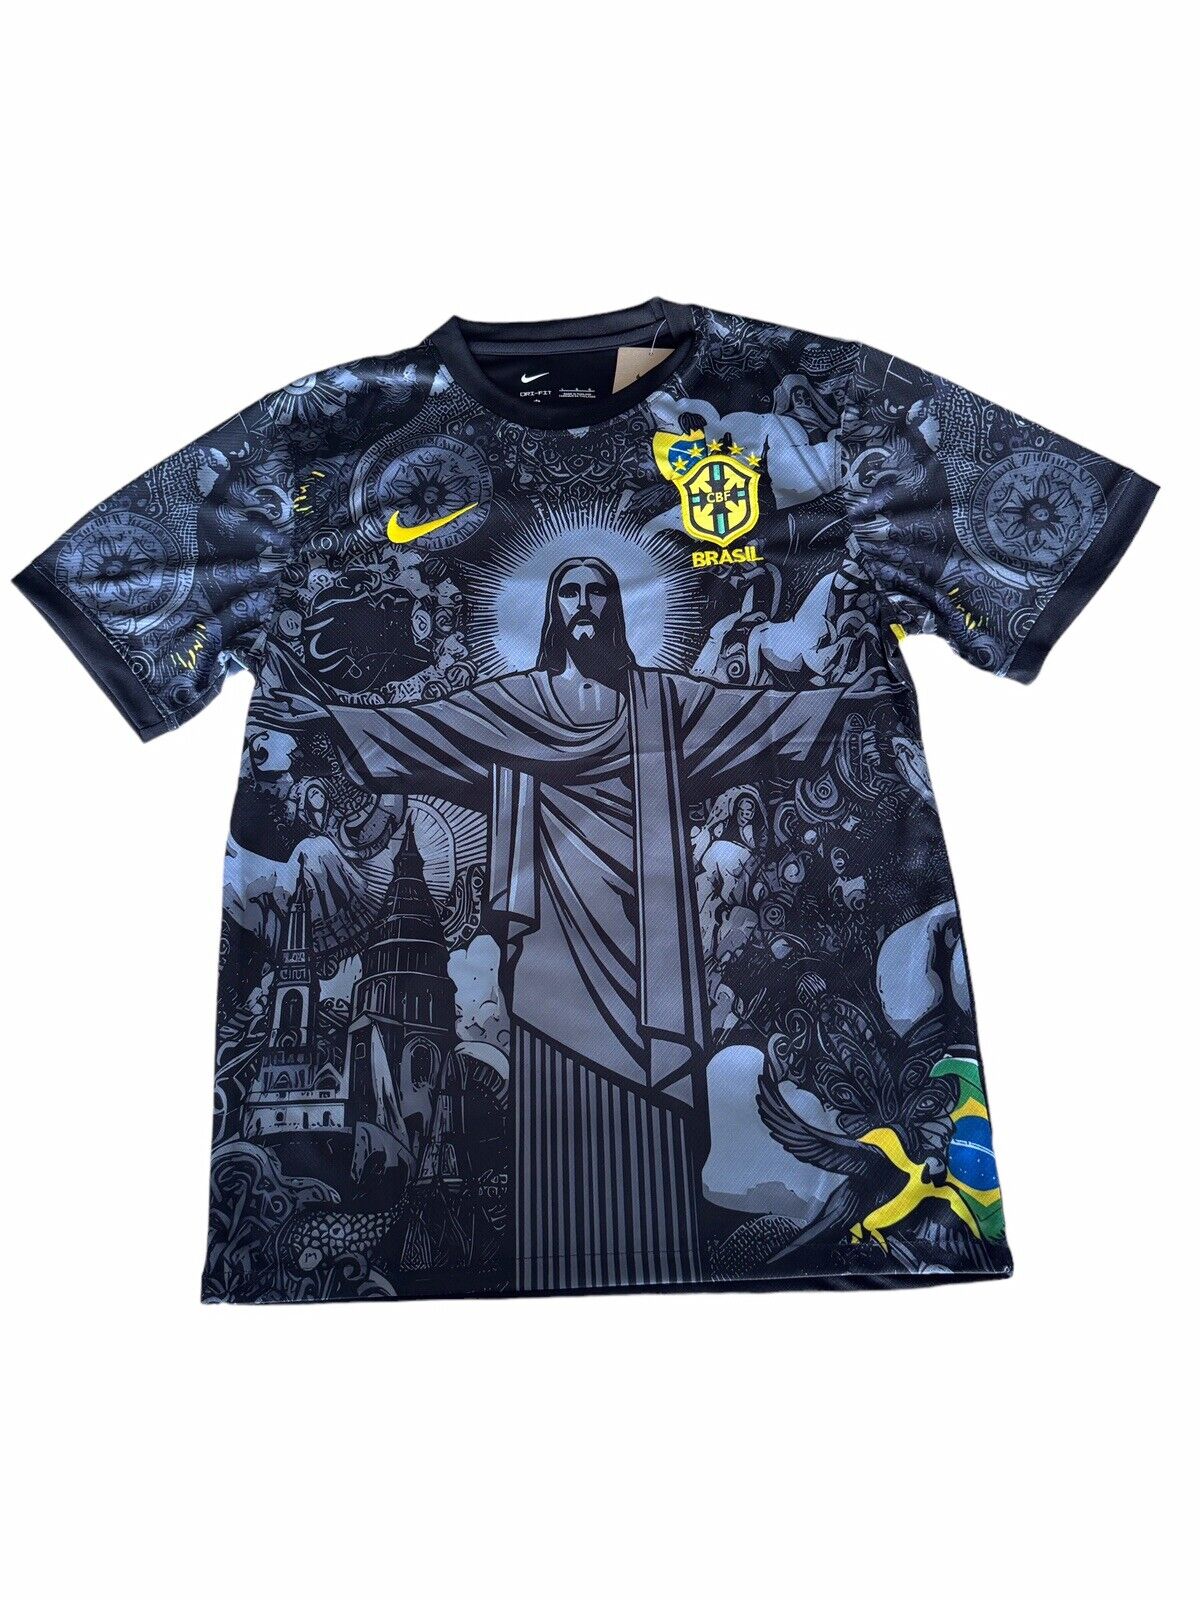 Brazil X Christ Football Soccer Jersey